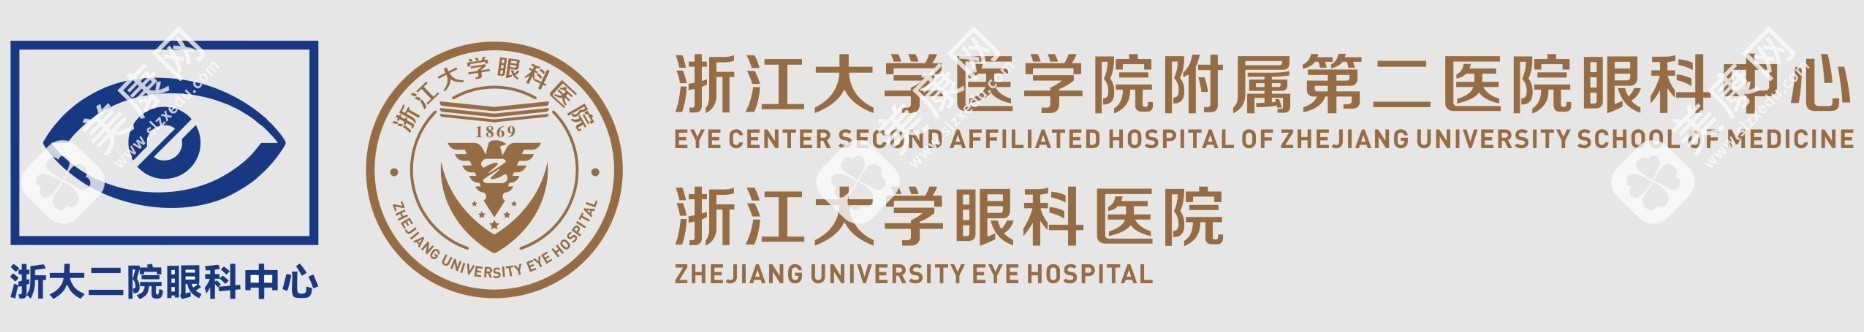 浙大二院医院logo